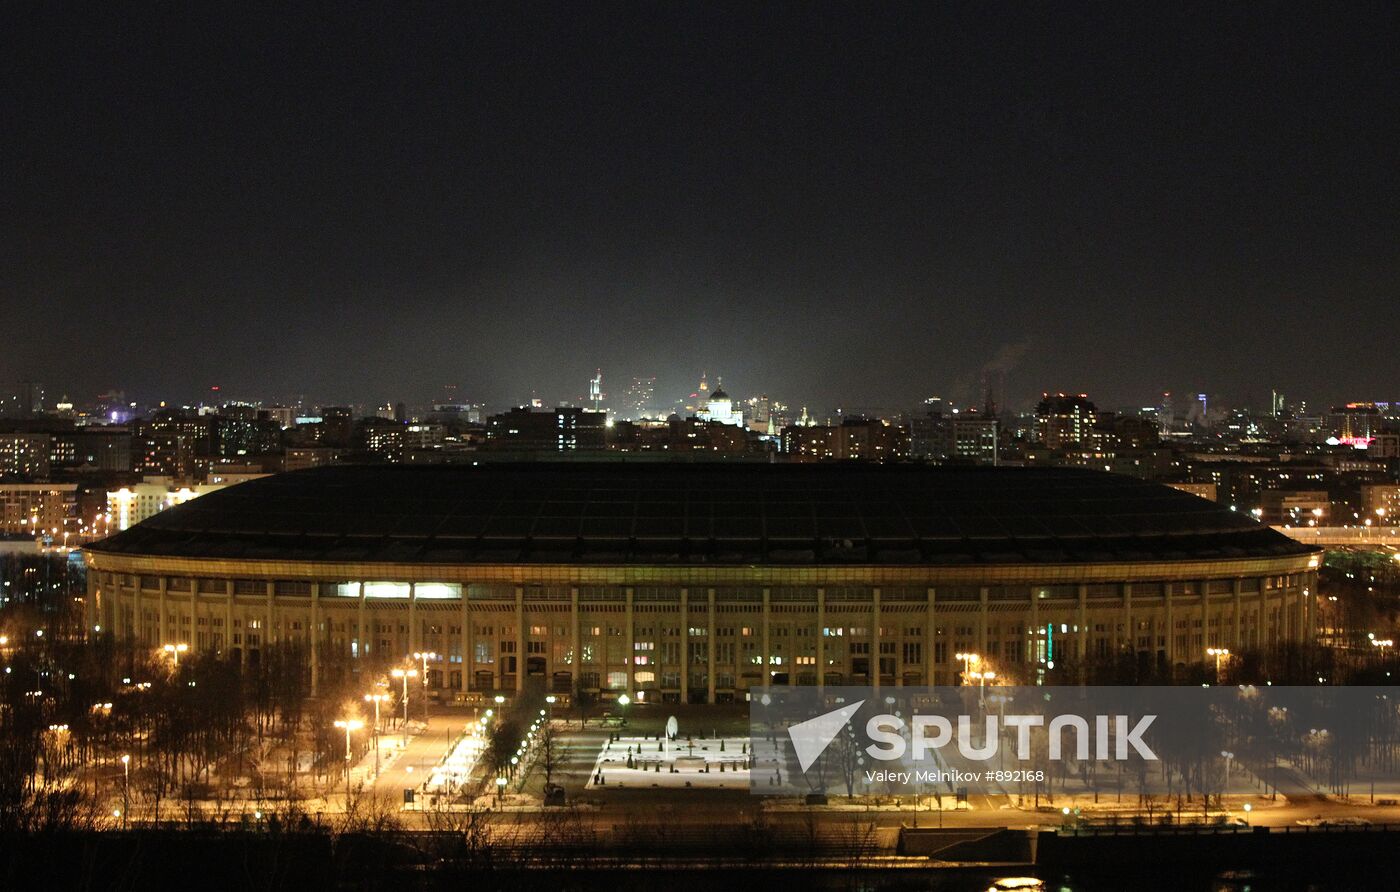 Grand Sports Arena "Luzhniki" without illumination